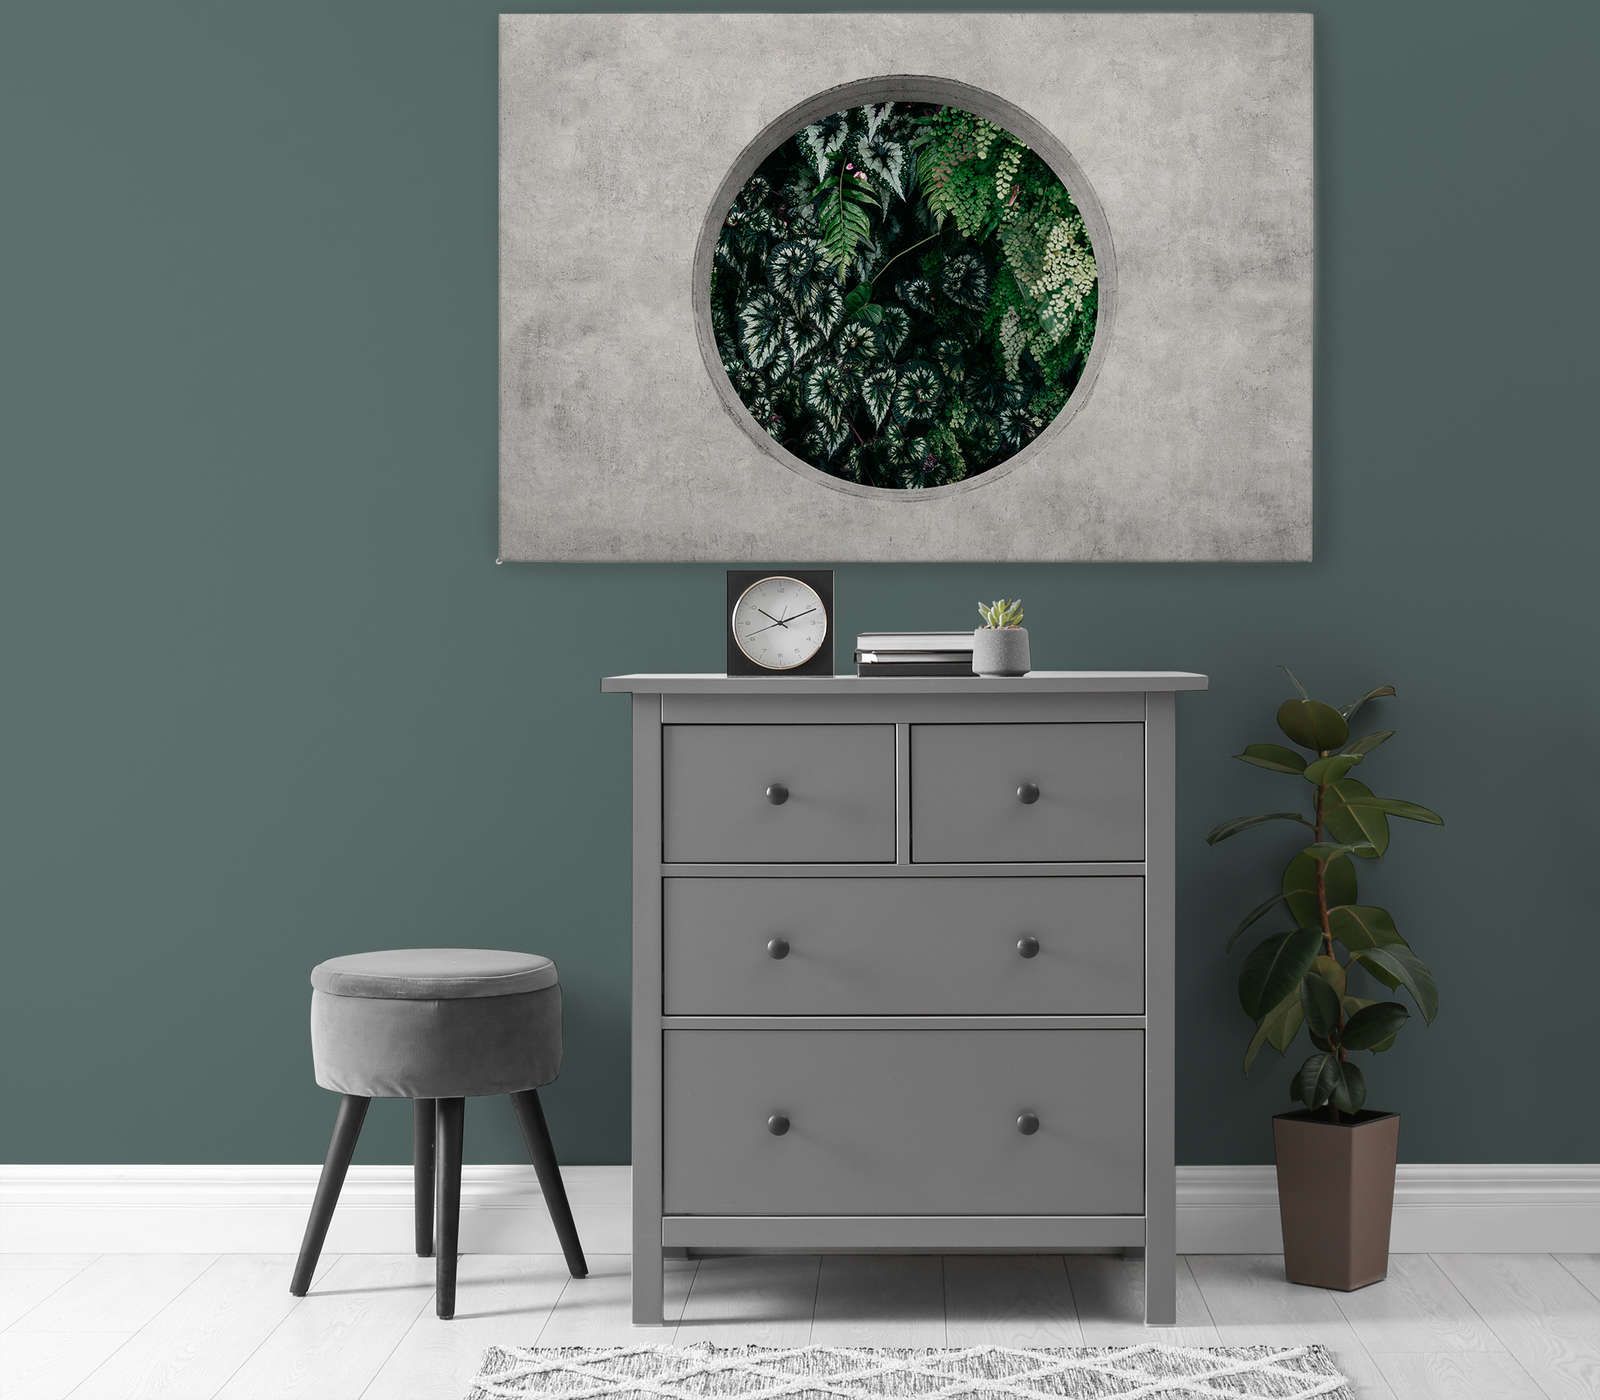             Deep Green 1 - Canvas schilderij Raam Rond met Jungle Planten - 1,20 m x 0,80 m
        